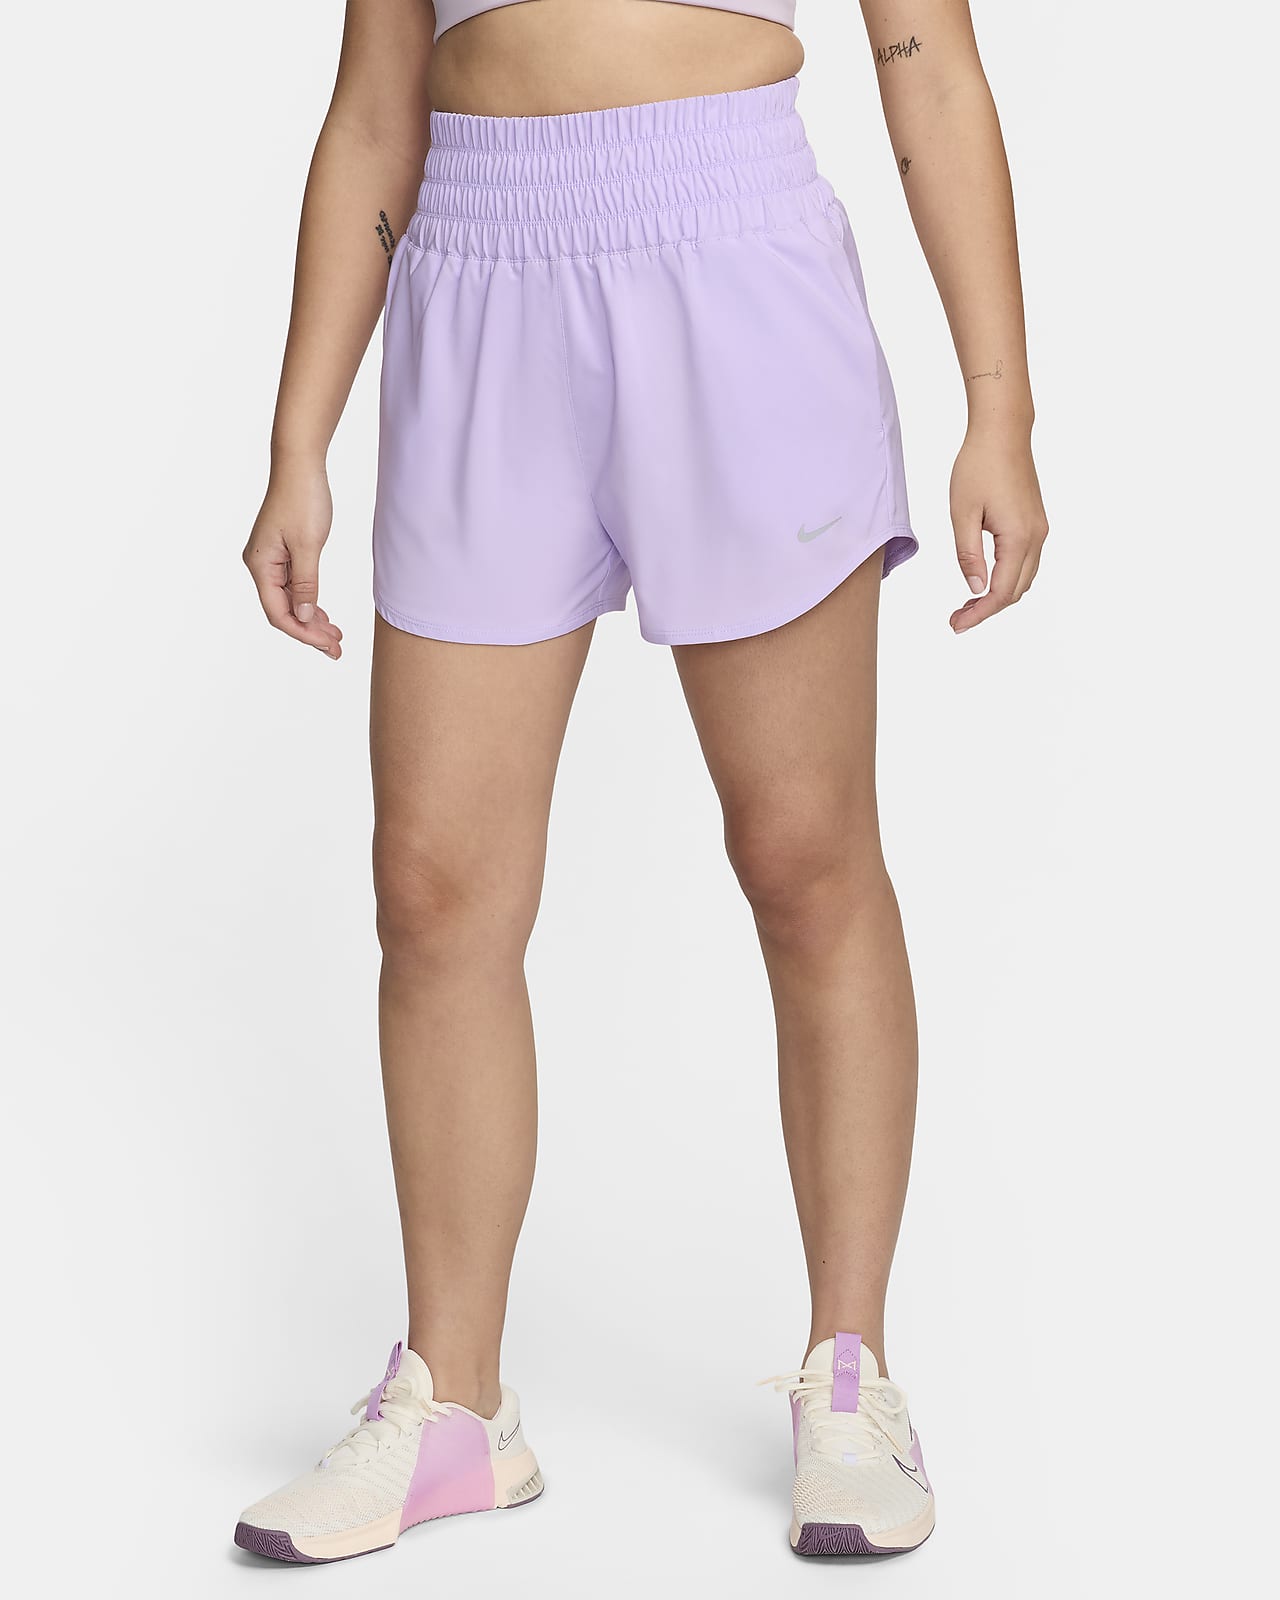 Nike One Pantalón corto de talle ultraalto con malla interior de 8 cm Dri-FIT - Mujer